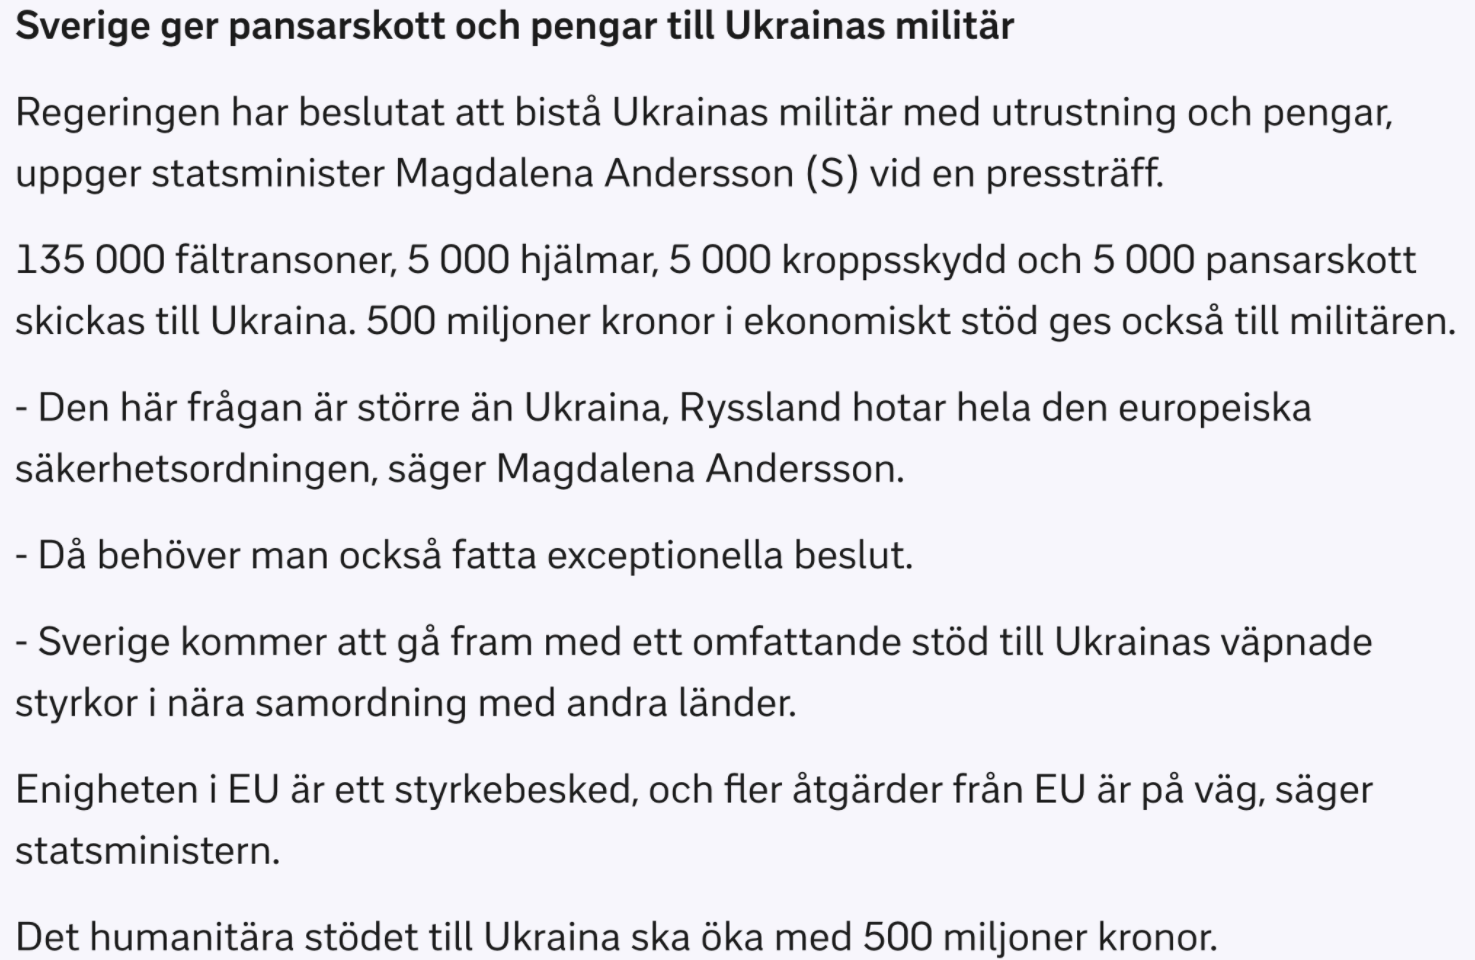 Швеция, Румыния и Бельгия передадут Украине оружие, а также $43 млн